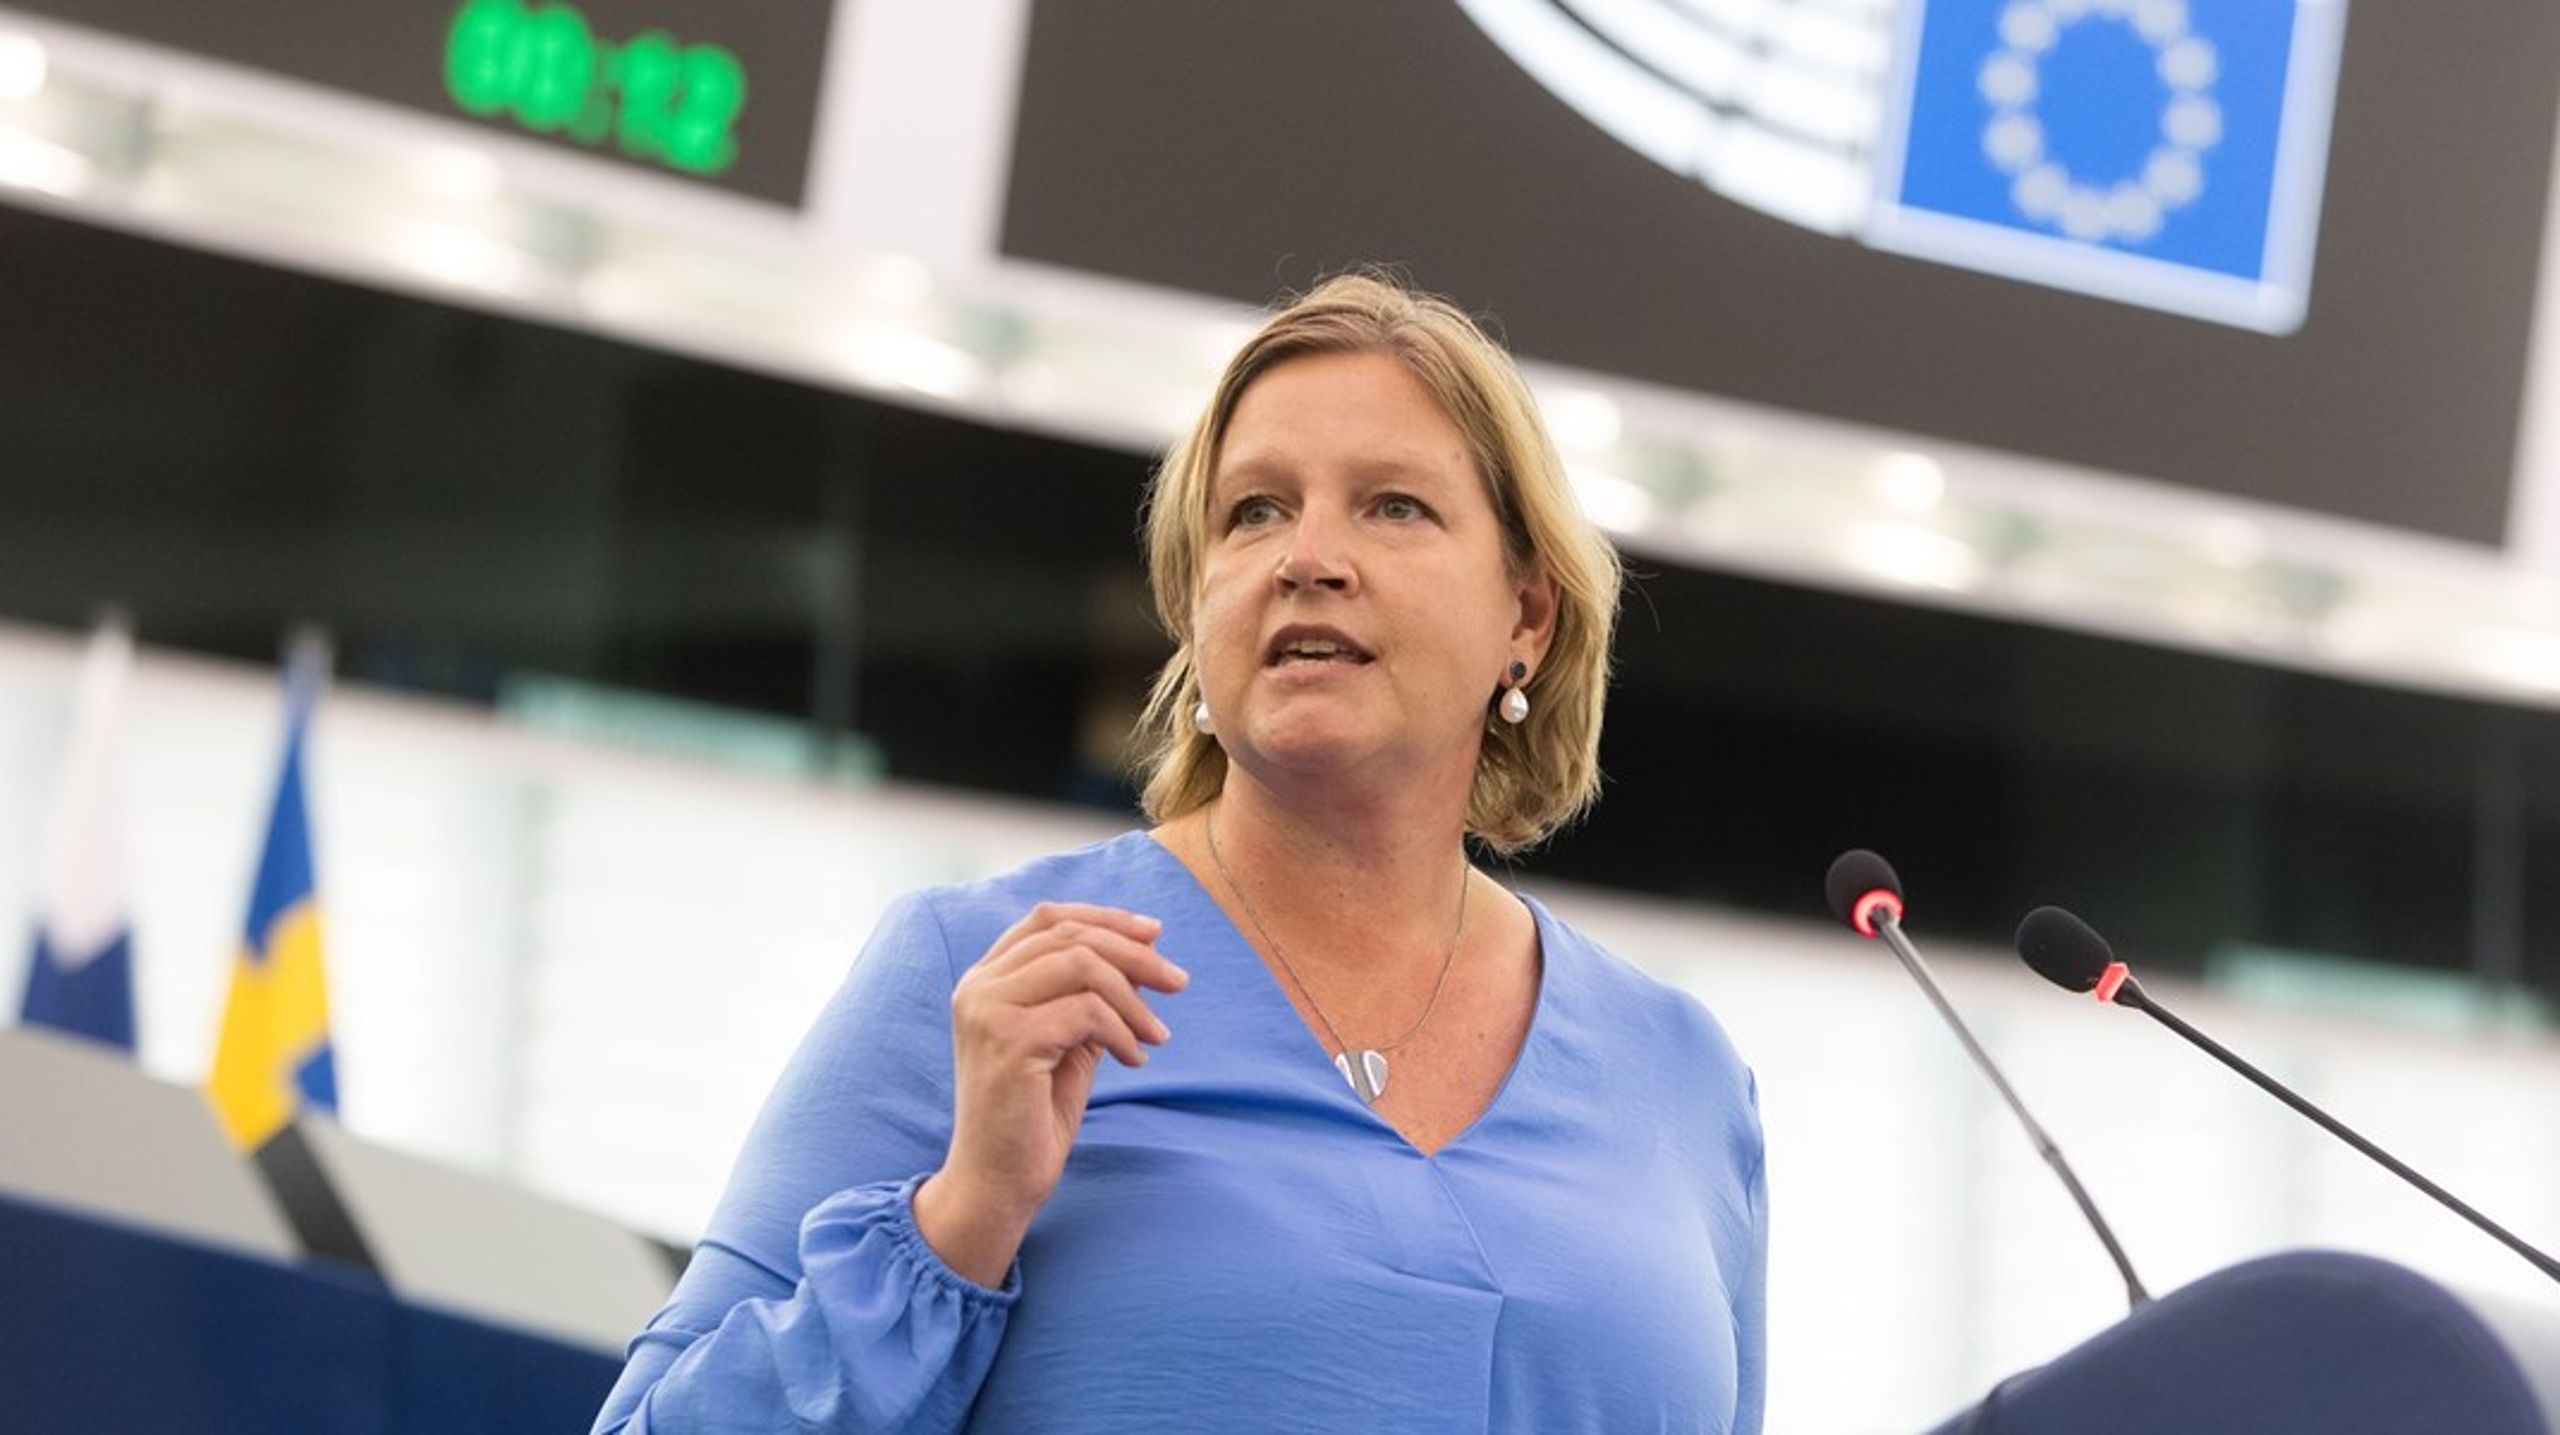 EU-parlamentarikern Karin Karlsbros (L) plats&nbsp;i den liberala partigruppen i parlamentet&nbsp;har ifrågasatts på grund av&nbsp;Liberalerna samarbete med Sverigedemokraterna på hemmaplan.&nbsp;